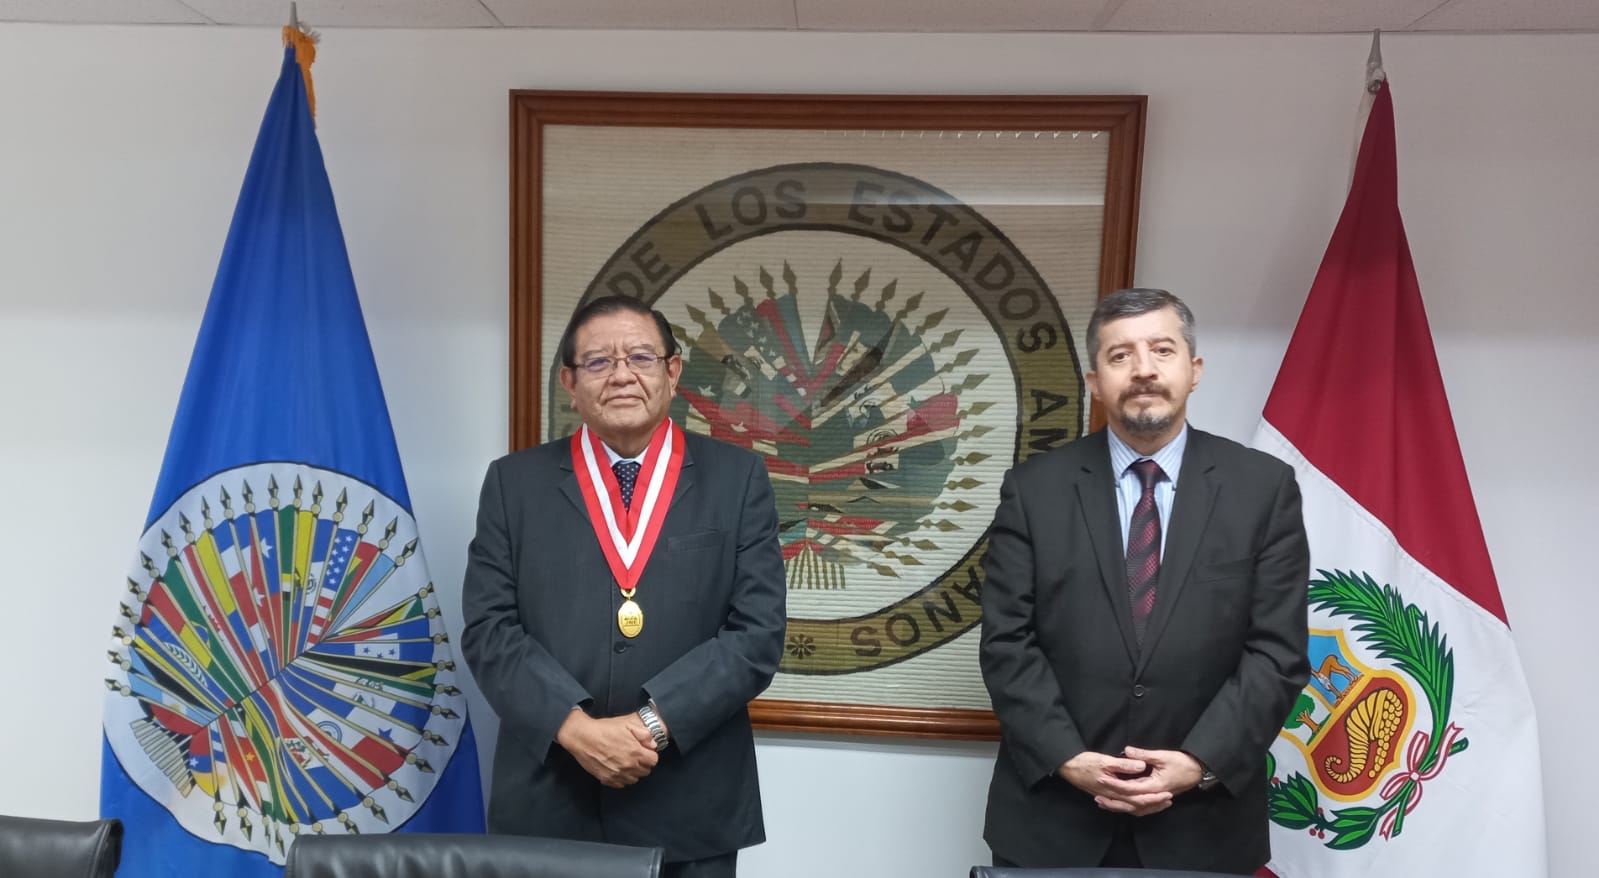 Jorge Luis Salas Arenas, Presidente del  Jurado Nacional de Elecciones   visito la Sede de la  OEA en Lima. Sostuvo una reunión con el Representante Miguel Angel Trinidad para informar sobre el actual proceso electoral para autoridades regionales y municipales en 2022.